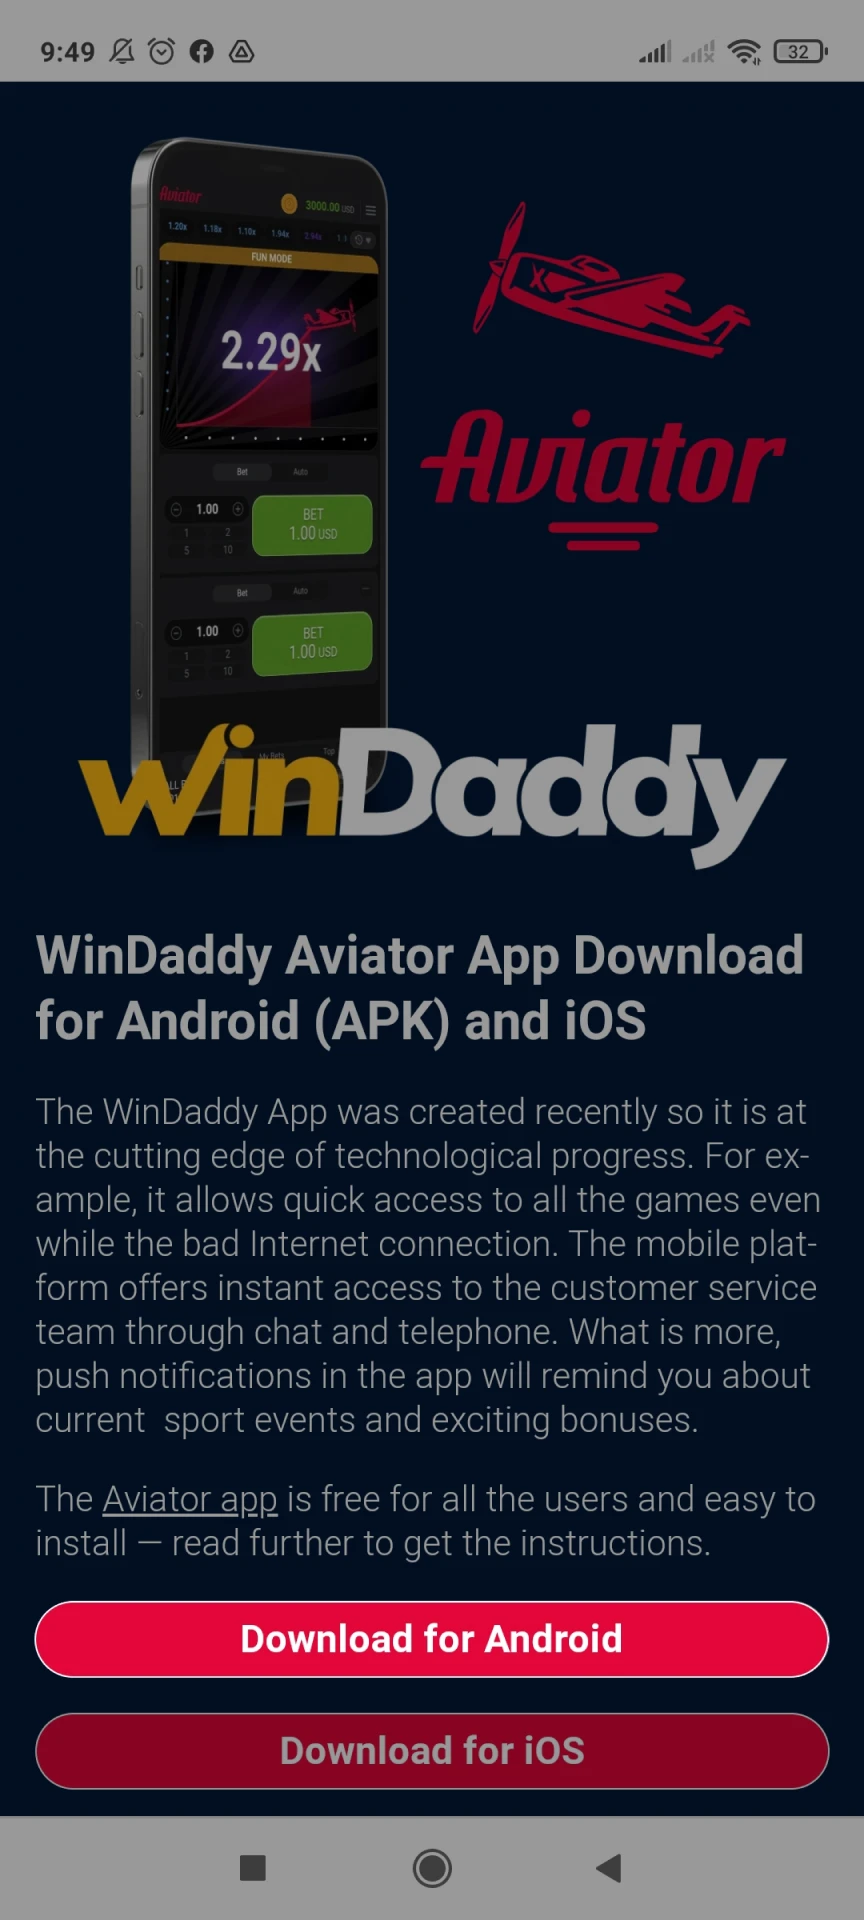 Acesse a página de download do WinDaddy para Android.